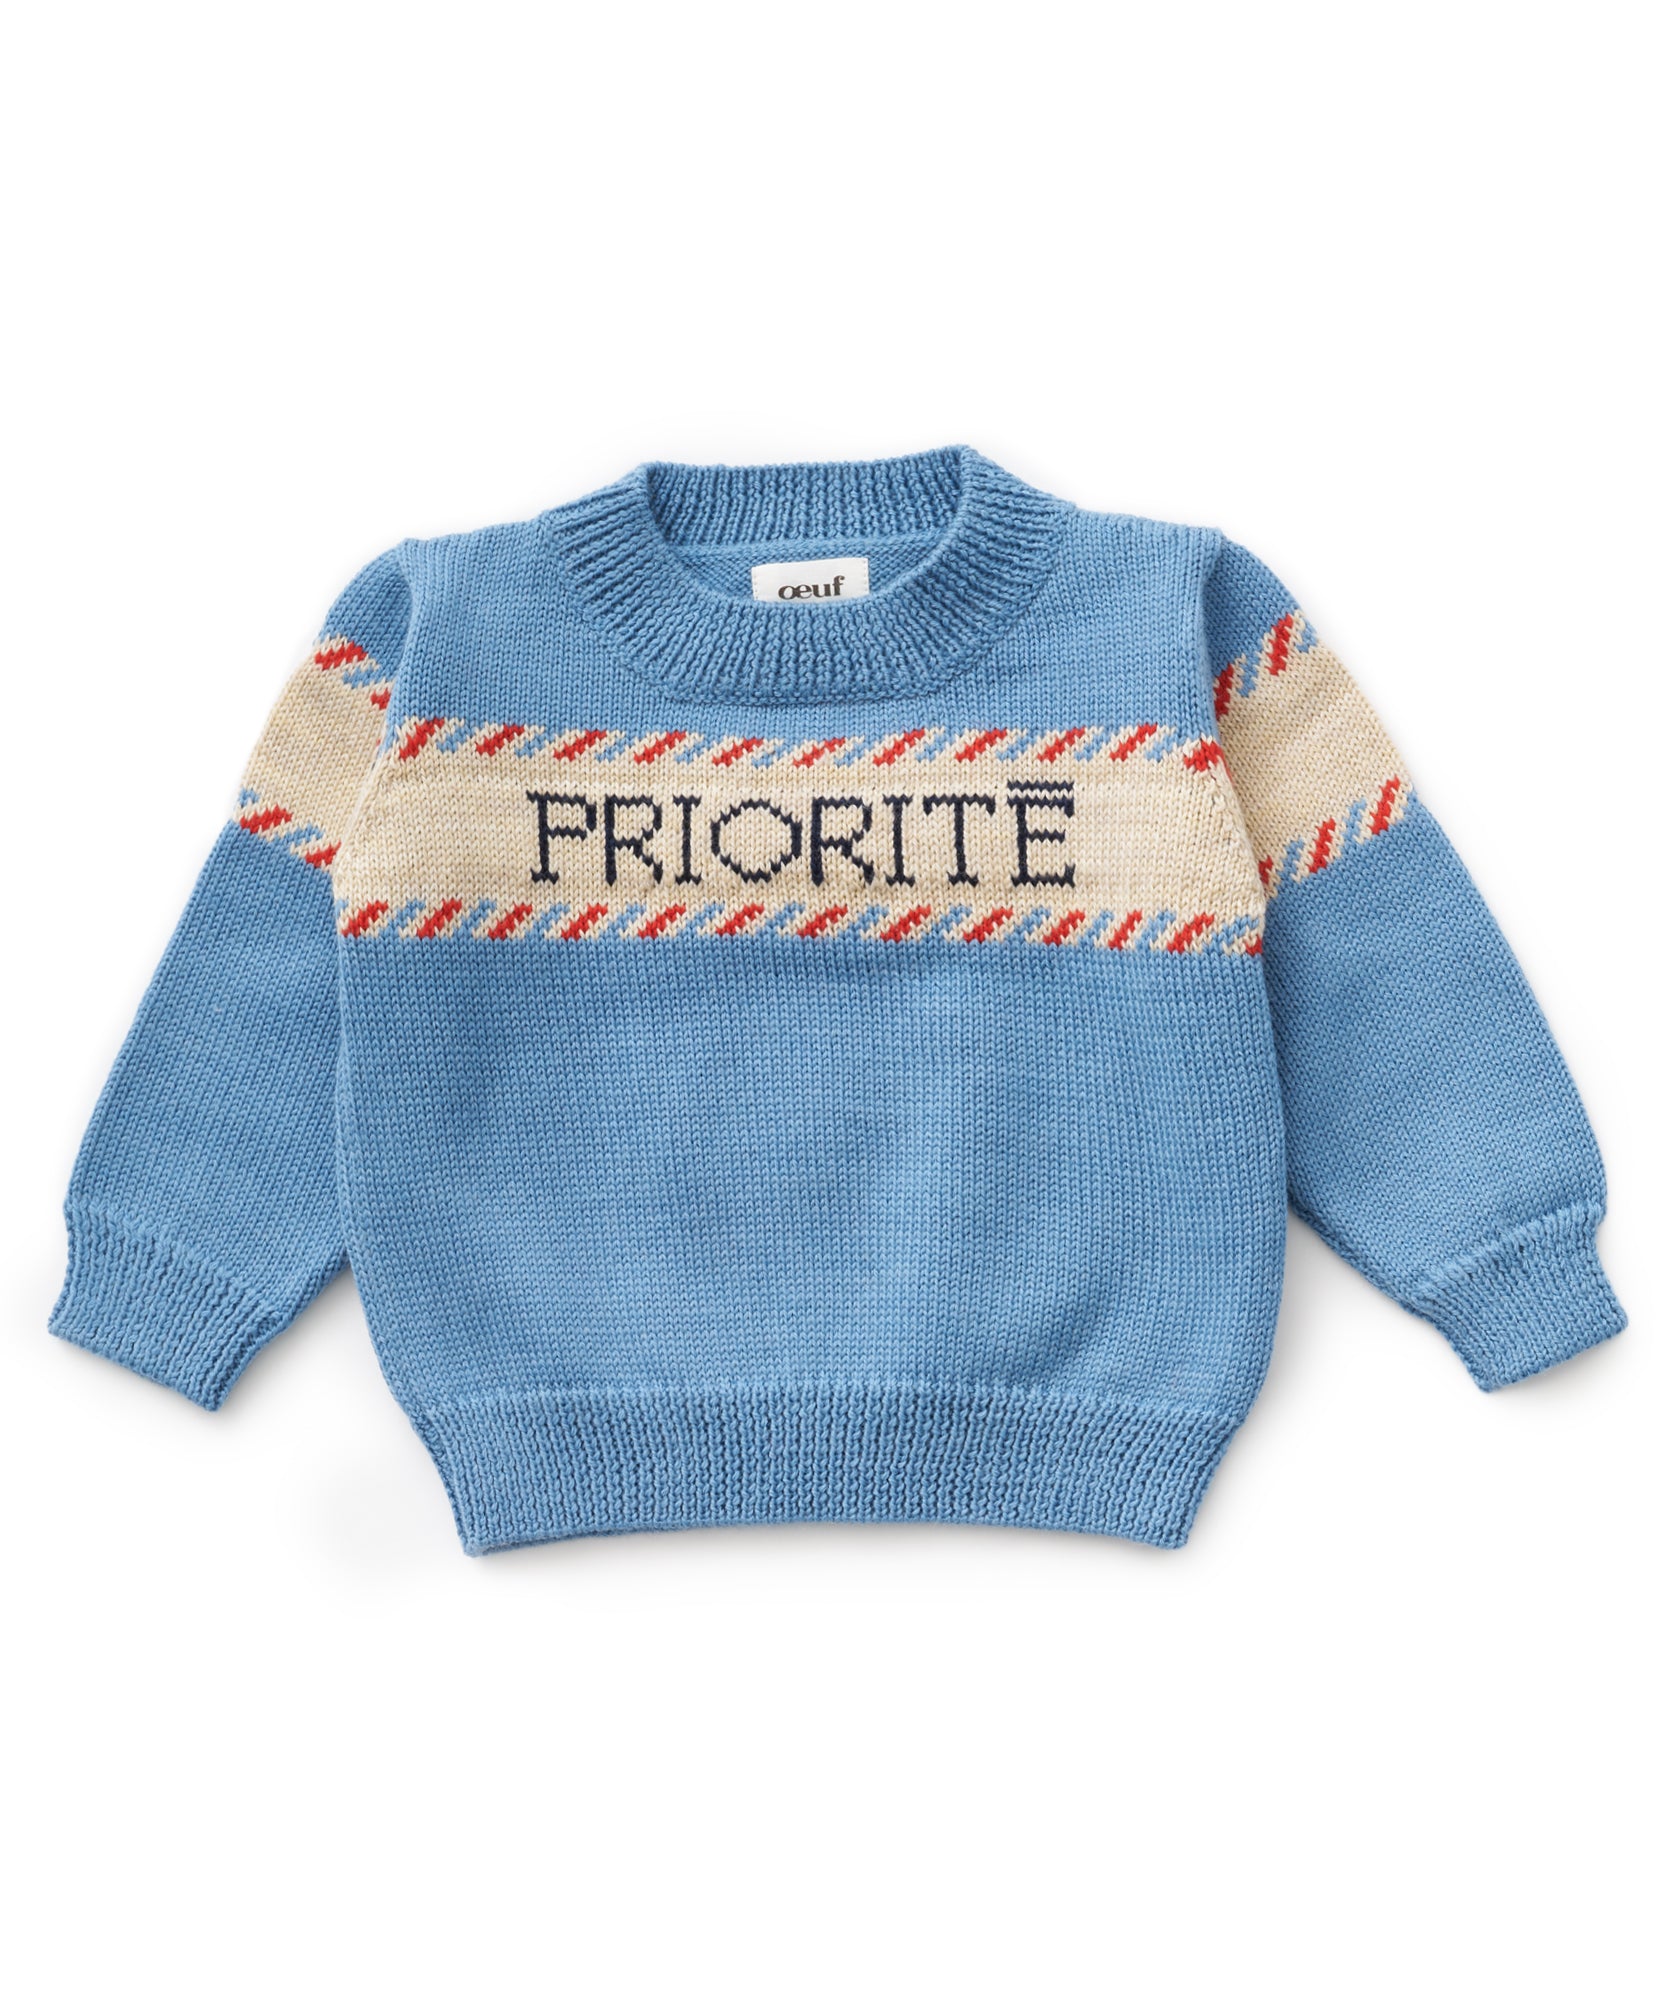 Priorite Sweater